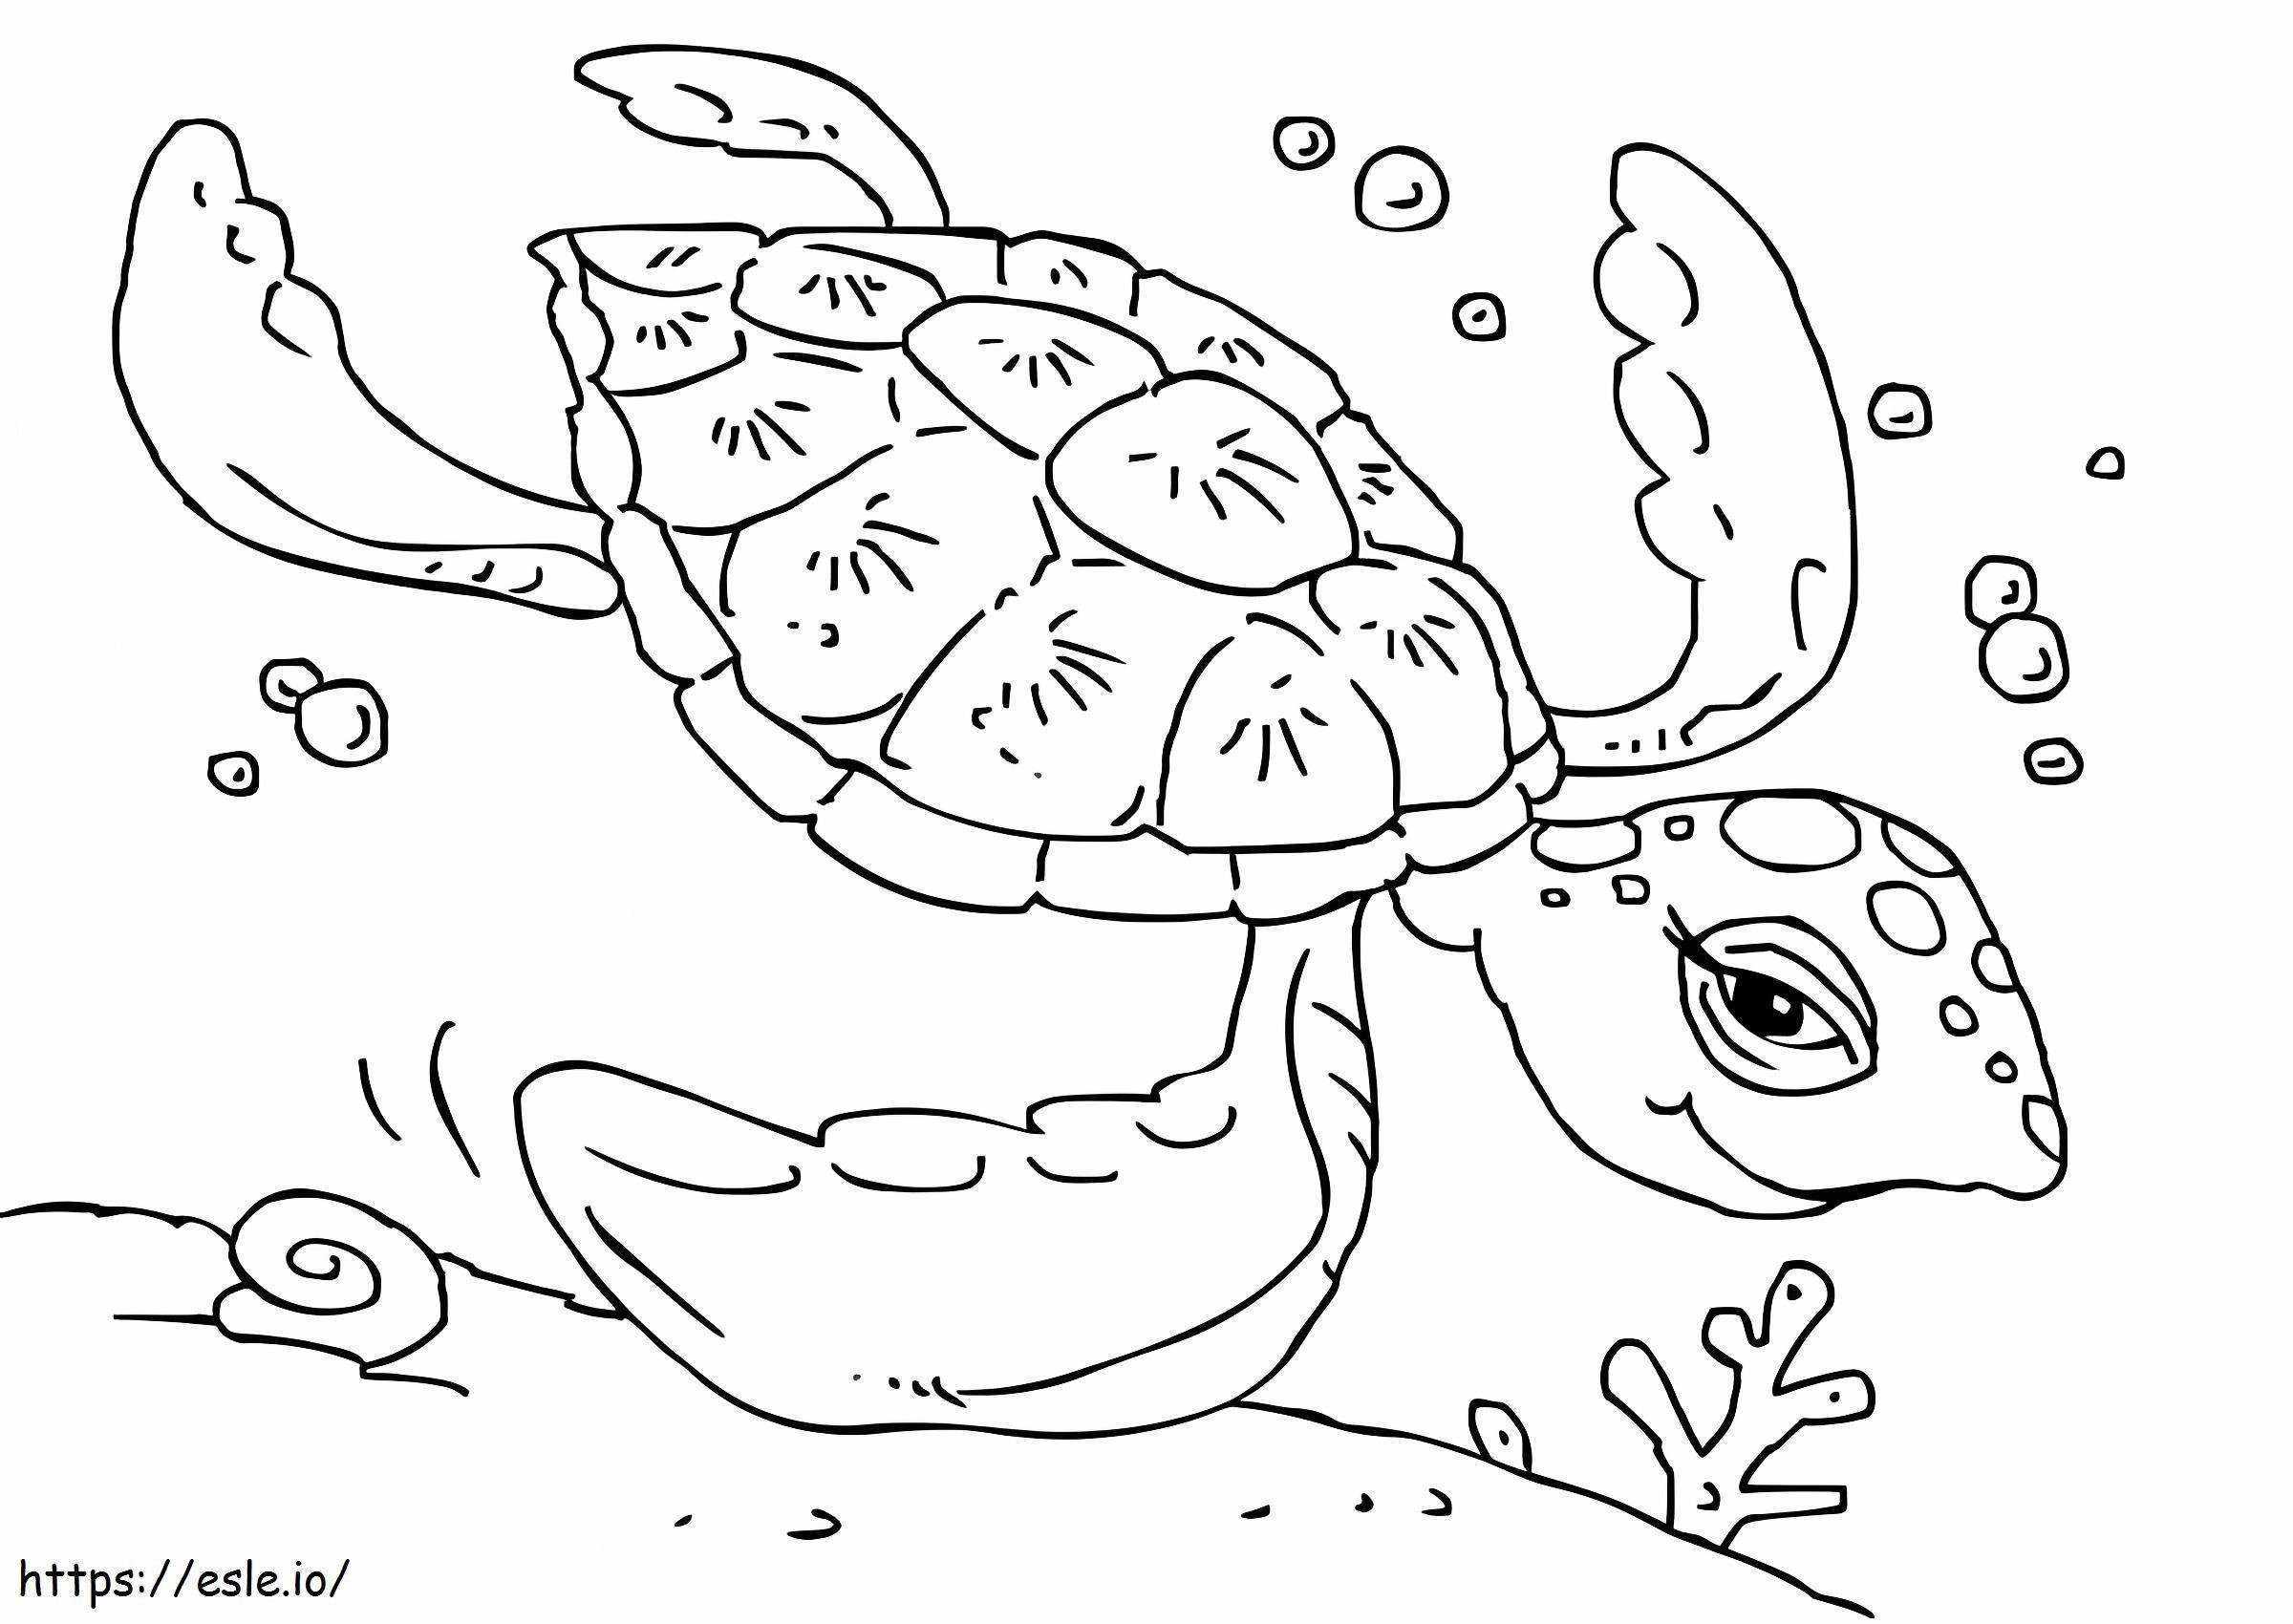 Nuoto della tartaruga marina 1 da colorare